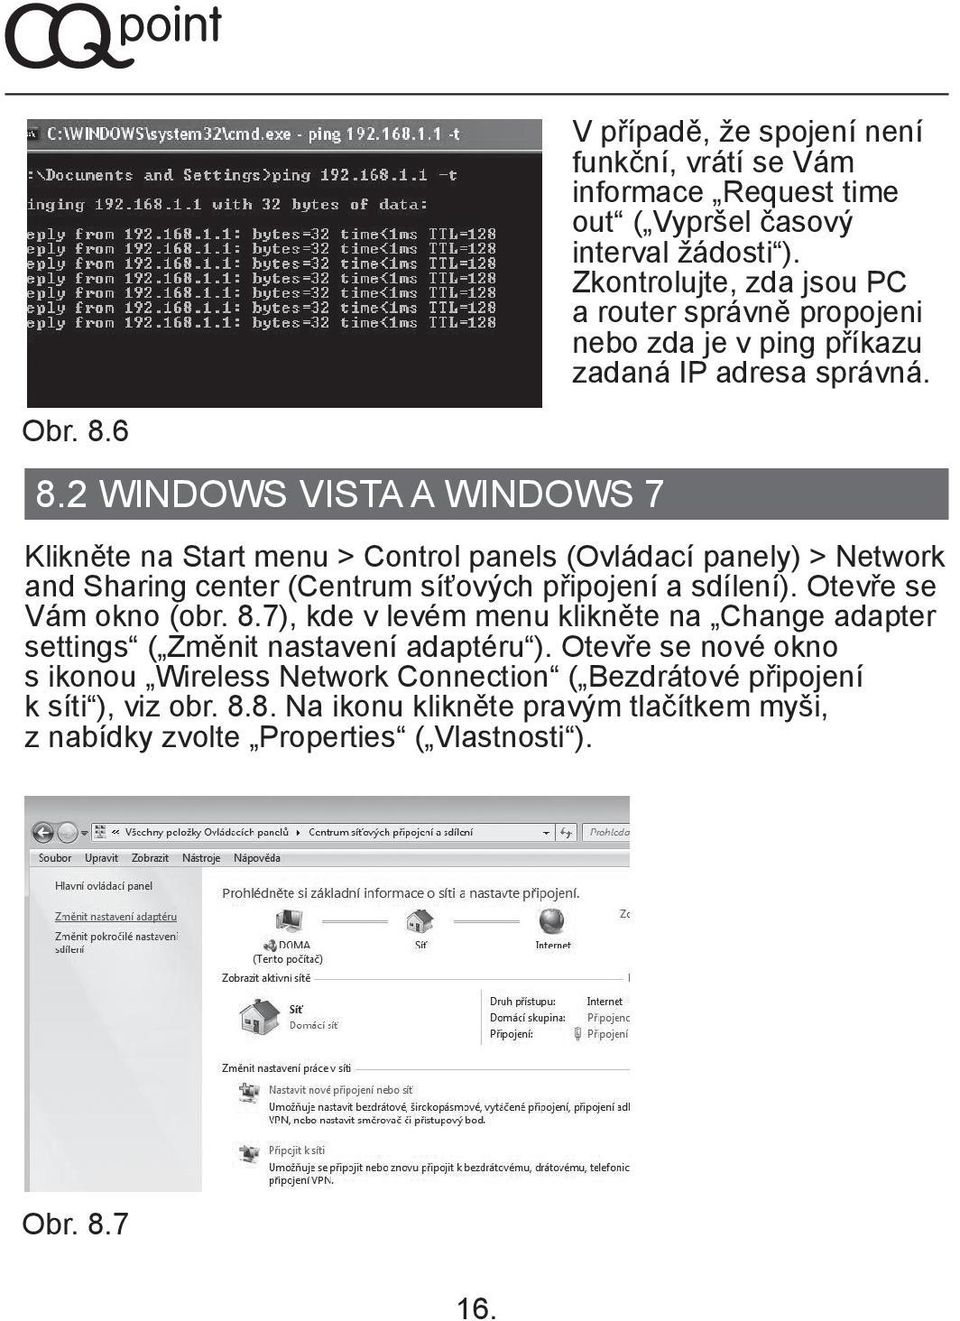 2 WINDOWS VISTA A WINDOWS 7 Klikněte na Start menu > Control panels (Ovládací panely) > Network and Sharing center (Centrum síťových připojení a sdílení).